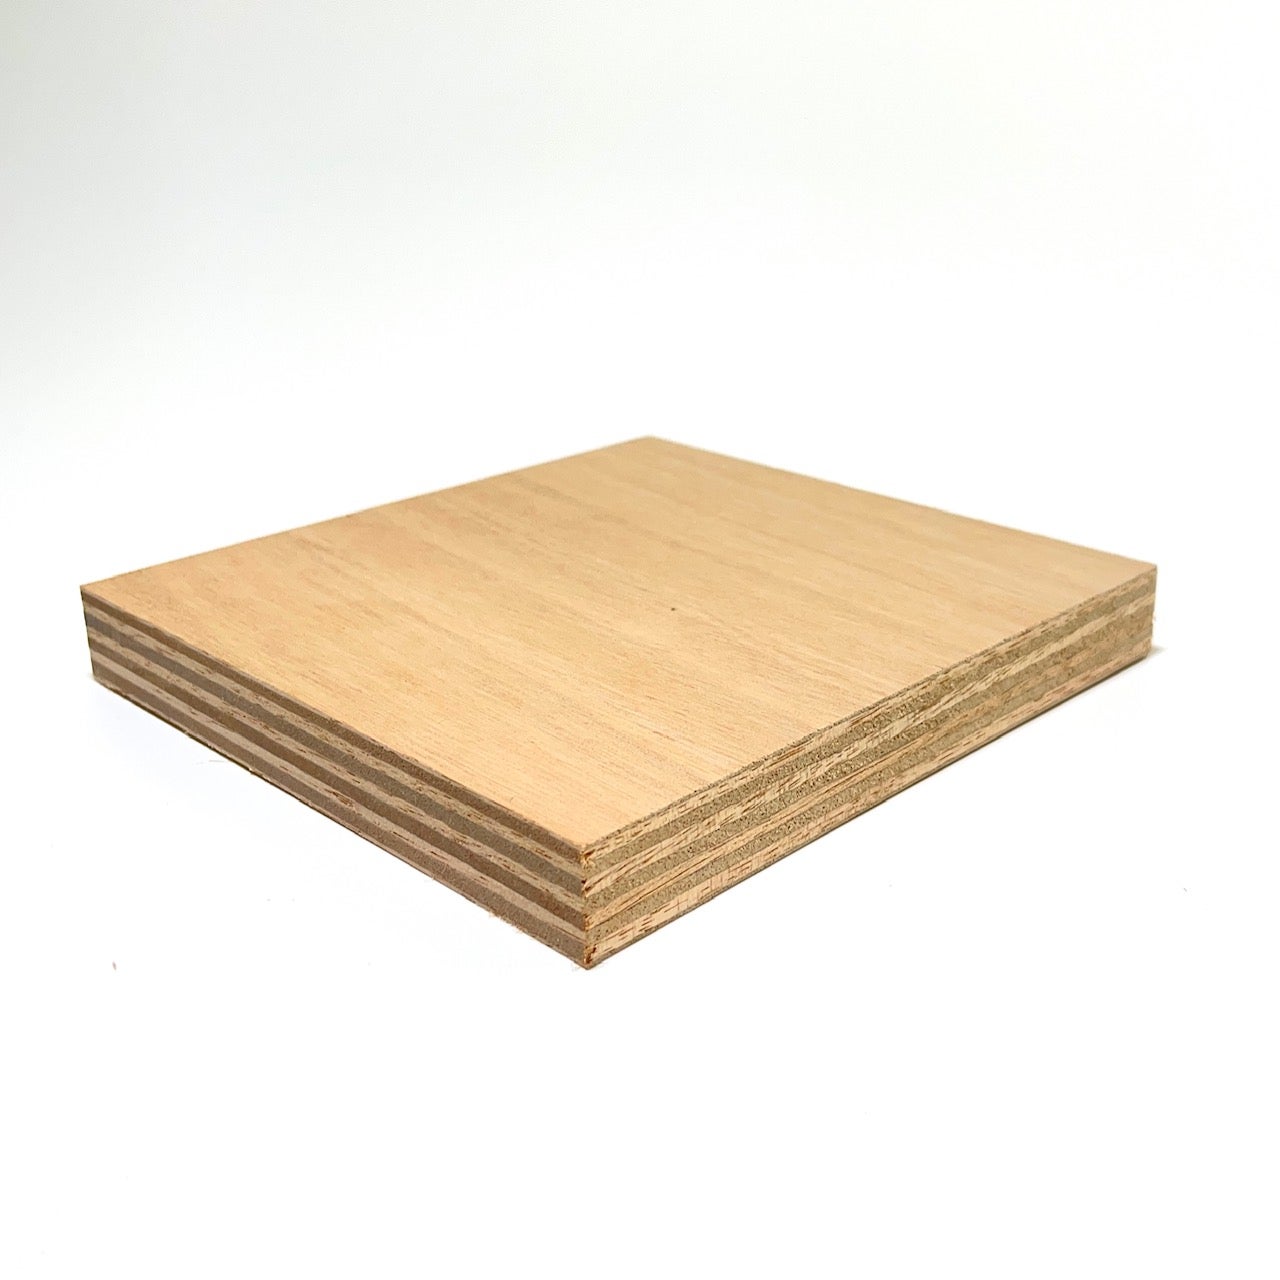 9mm legno compensato pannelli multistrati tagliati fino a 200cm 130x130 cm